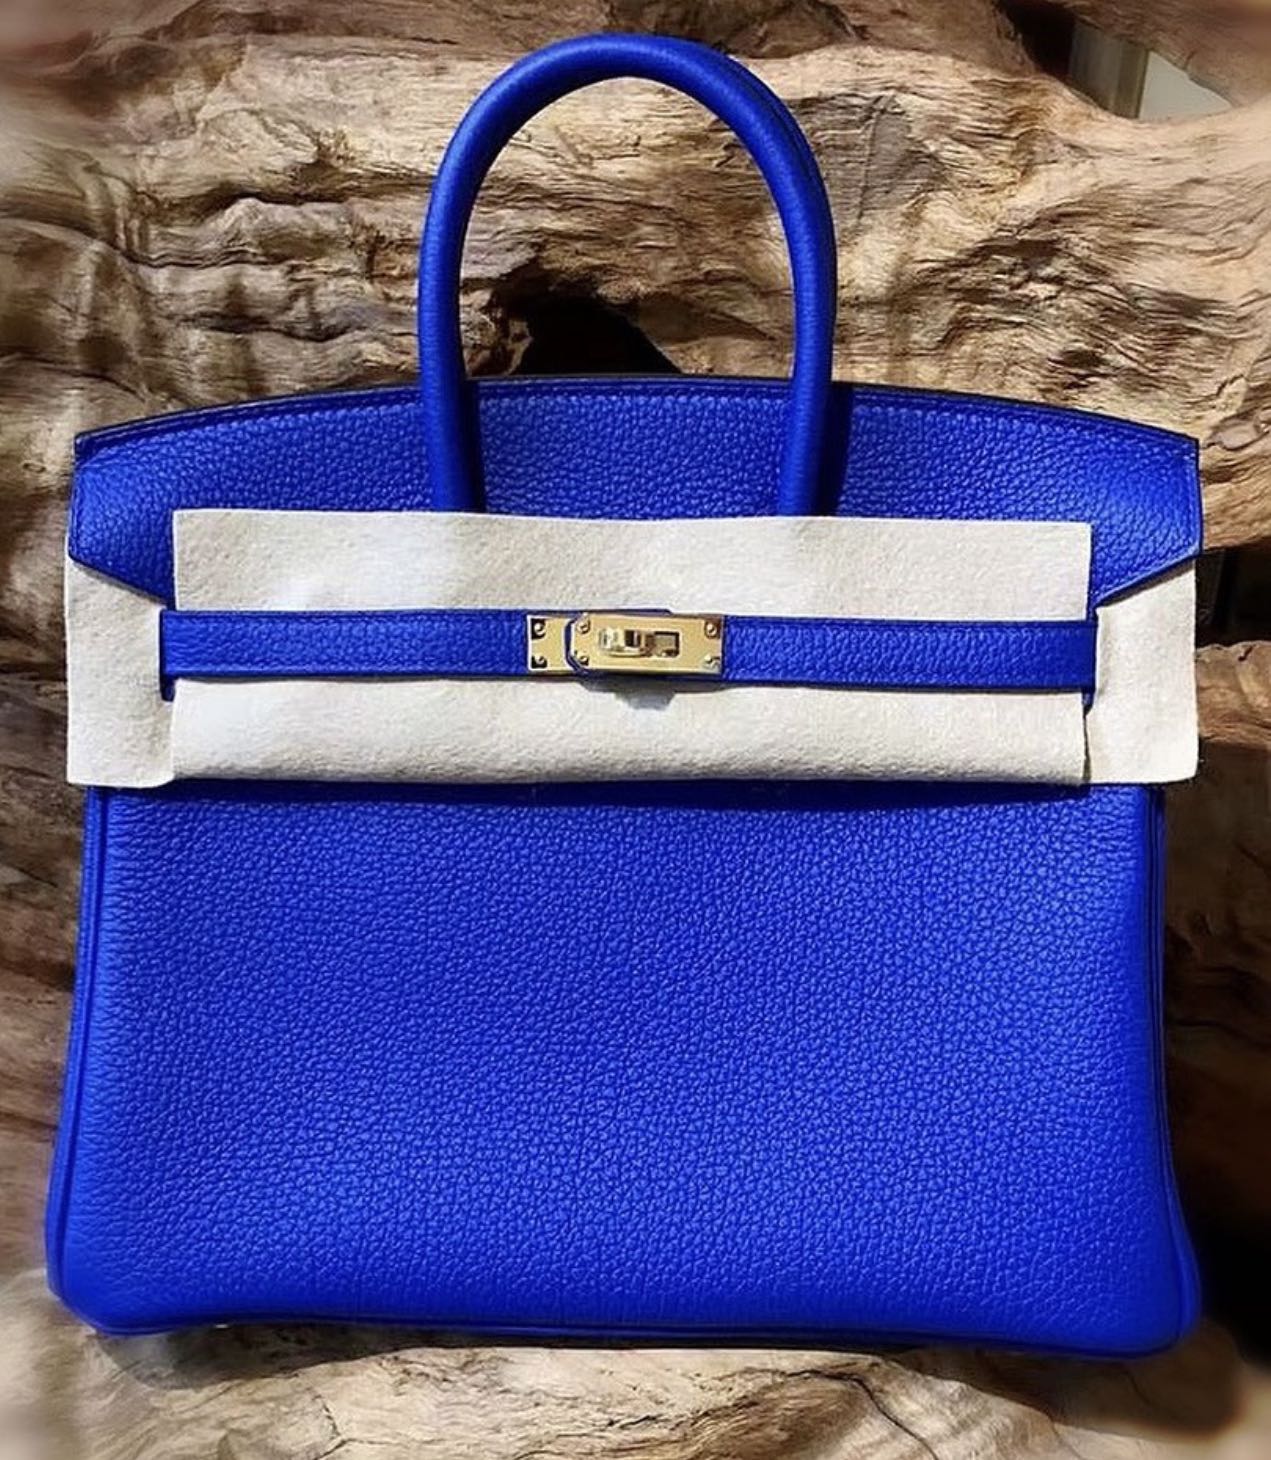 Name:Birkin25 Touch Material:Togo×Lizard Color:Bleu Royal Color No